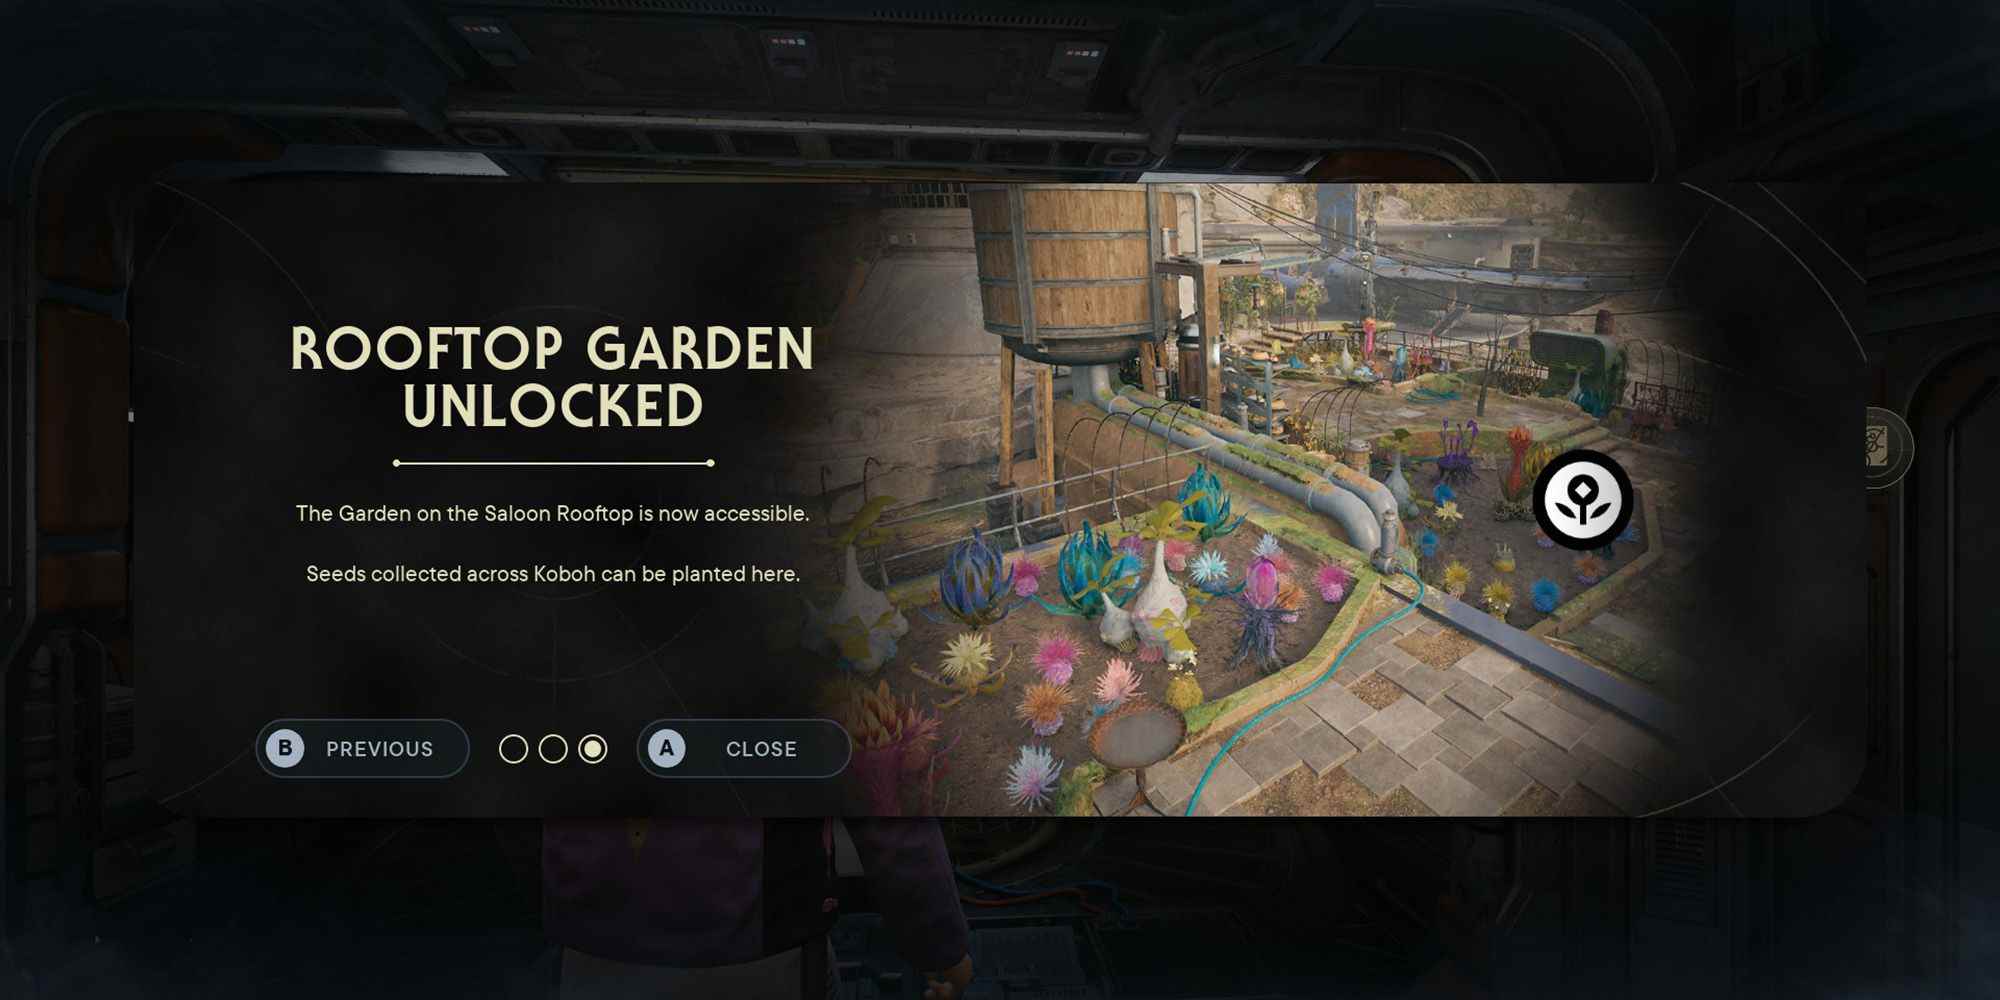 Star Wars Jedi Survivor'da oyuncuyu çatı bahçesinin kilidinin açıldığı konusunda uyaran bir ekranın ekran görüntüsü